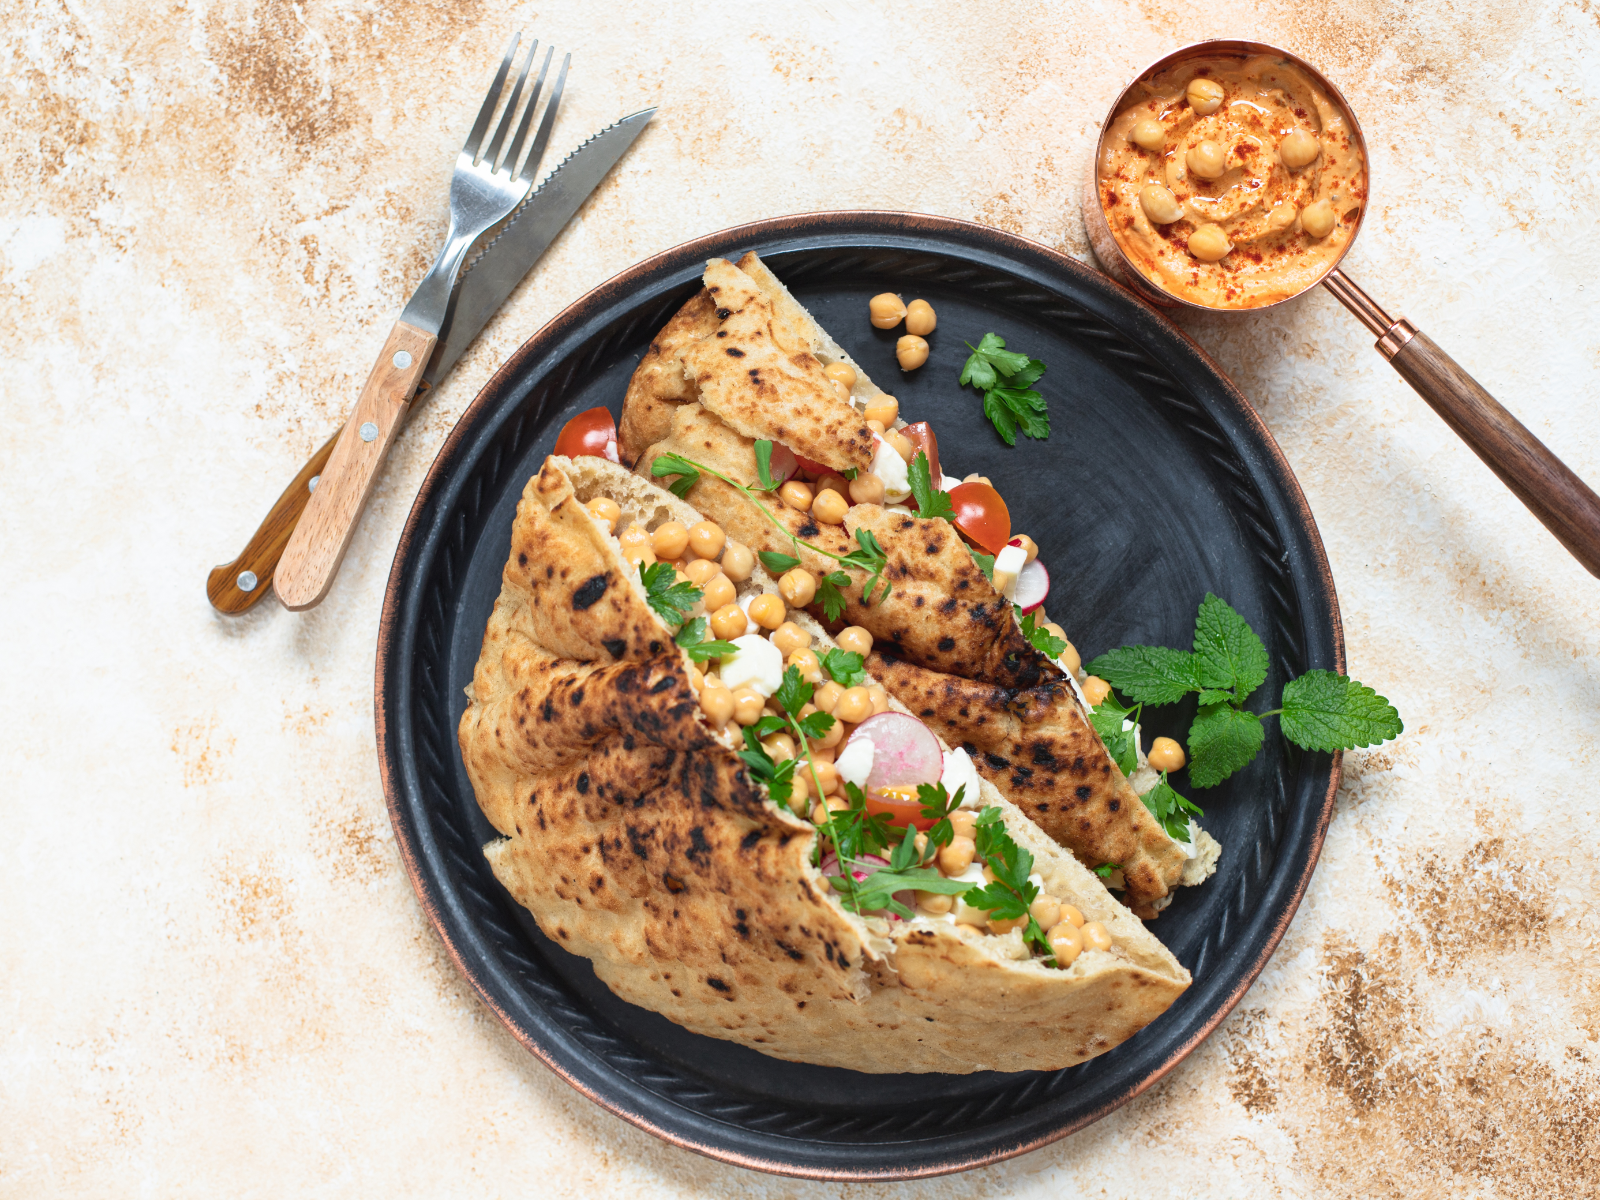 whole grain pita with chickpea and veggies and tahini